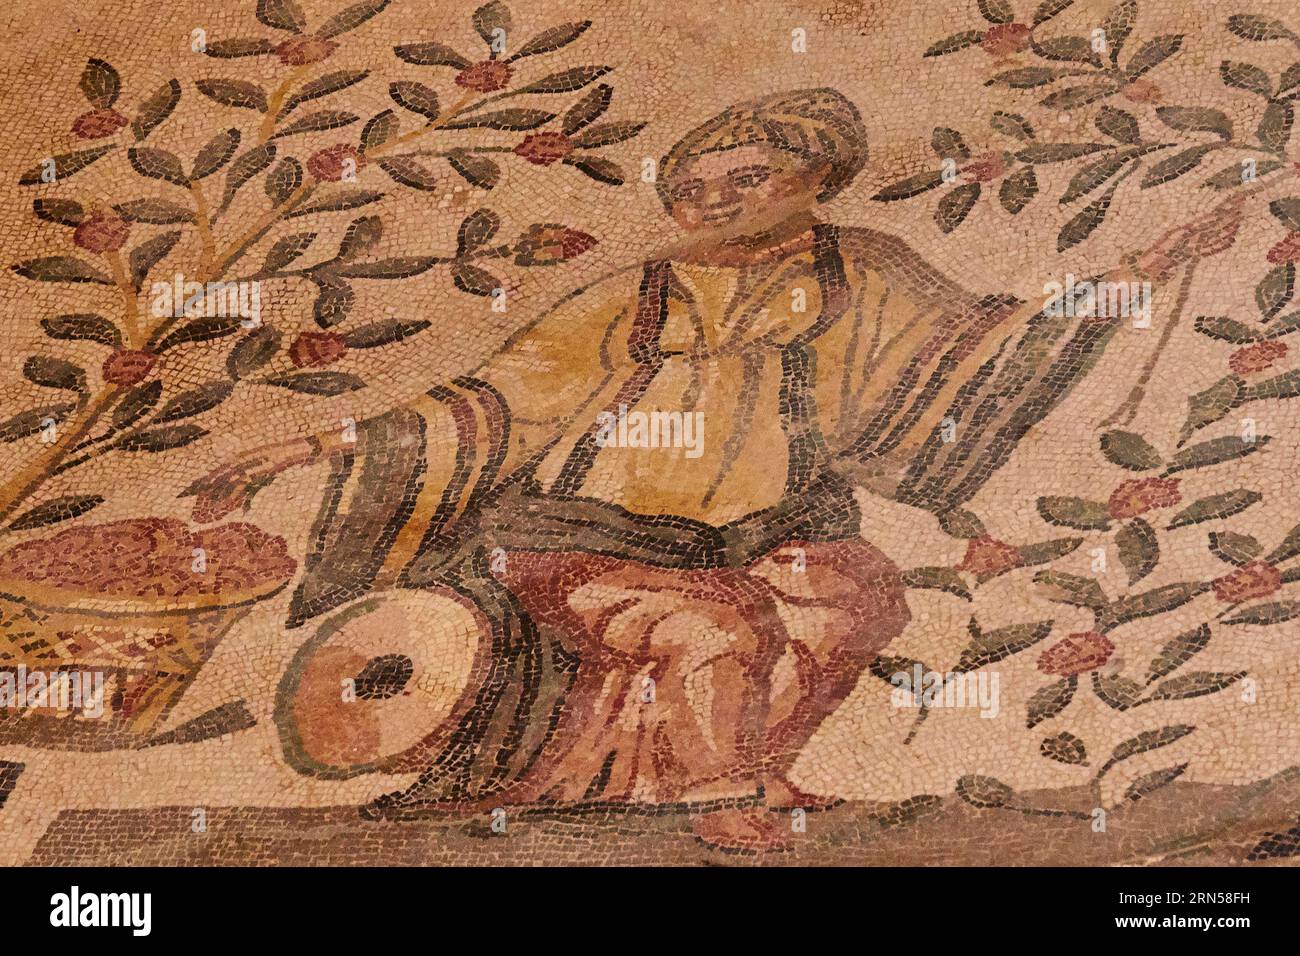 Femme cueillant des fruits, mosaïques romaines, Villa Romana del Casale, site du patrimoine mondial de l'UNESCO, Piazza Armerina, province d'Enna, Sicile, Italie Banque D'Images